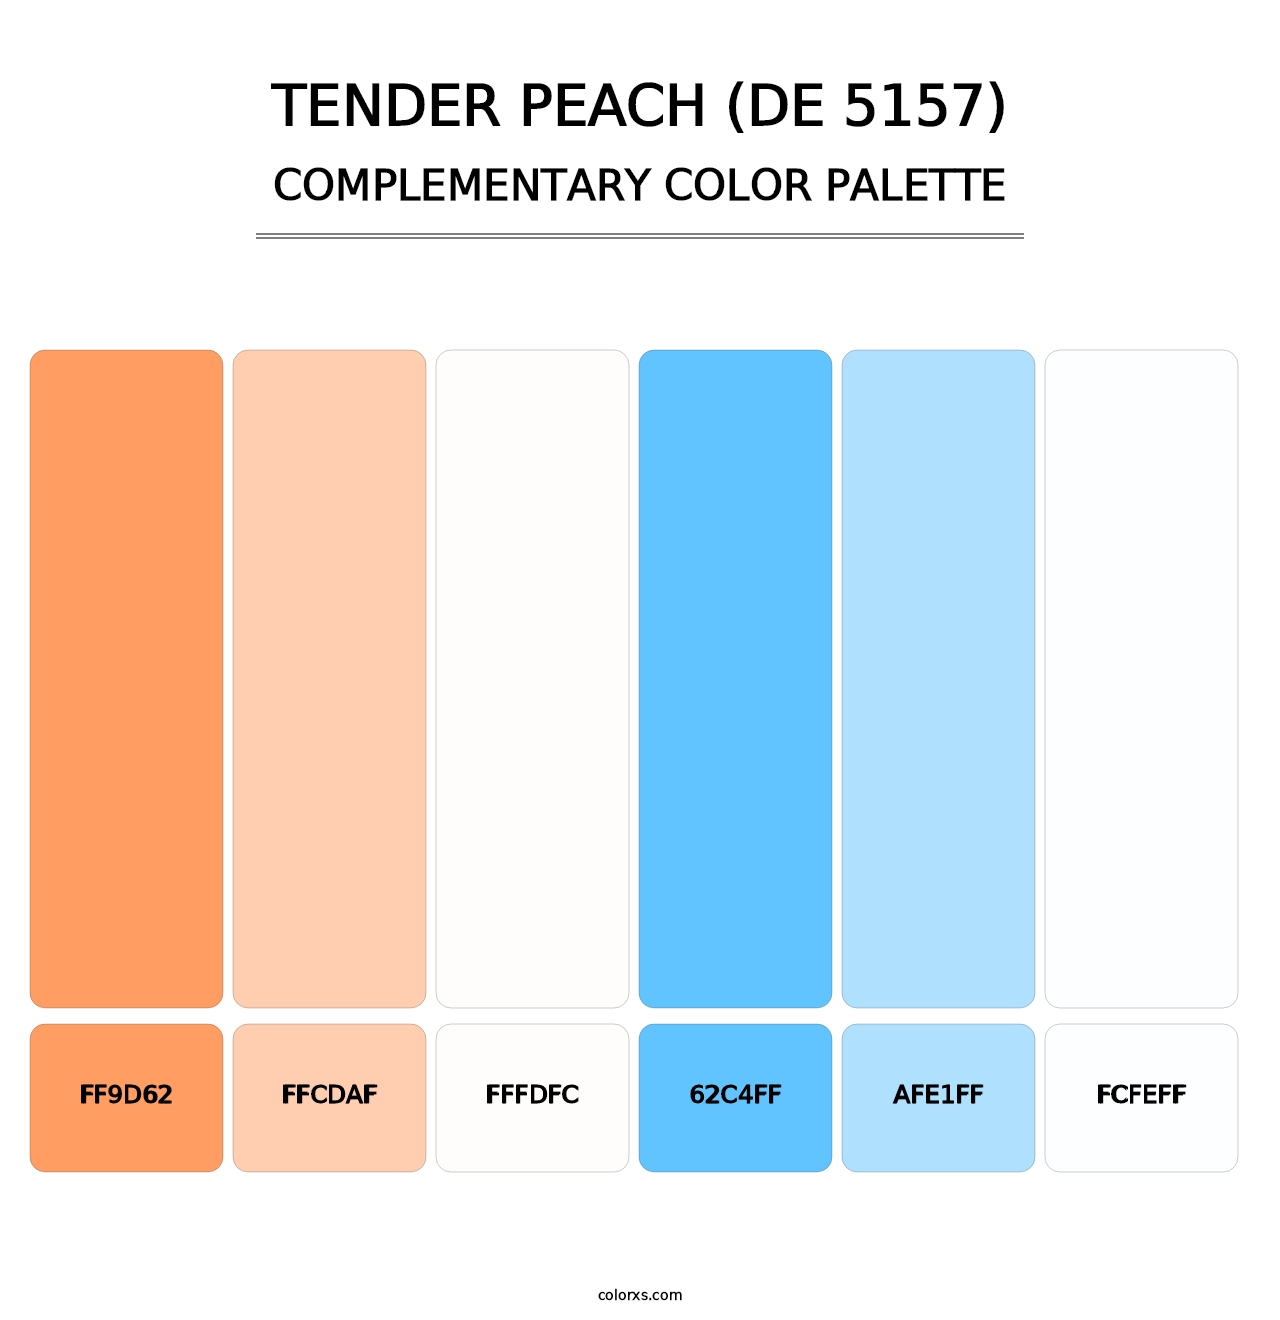 Tender Peach (DE 5157) - Complementary Color Palette